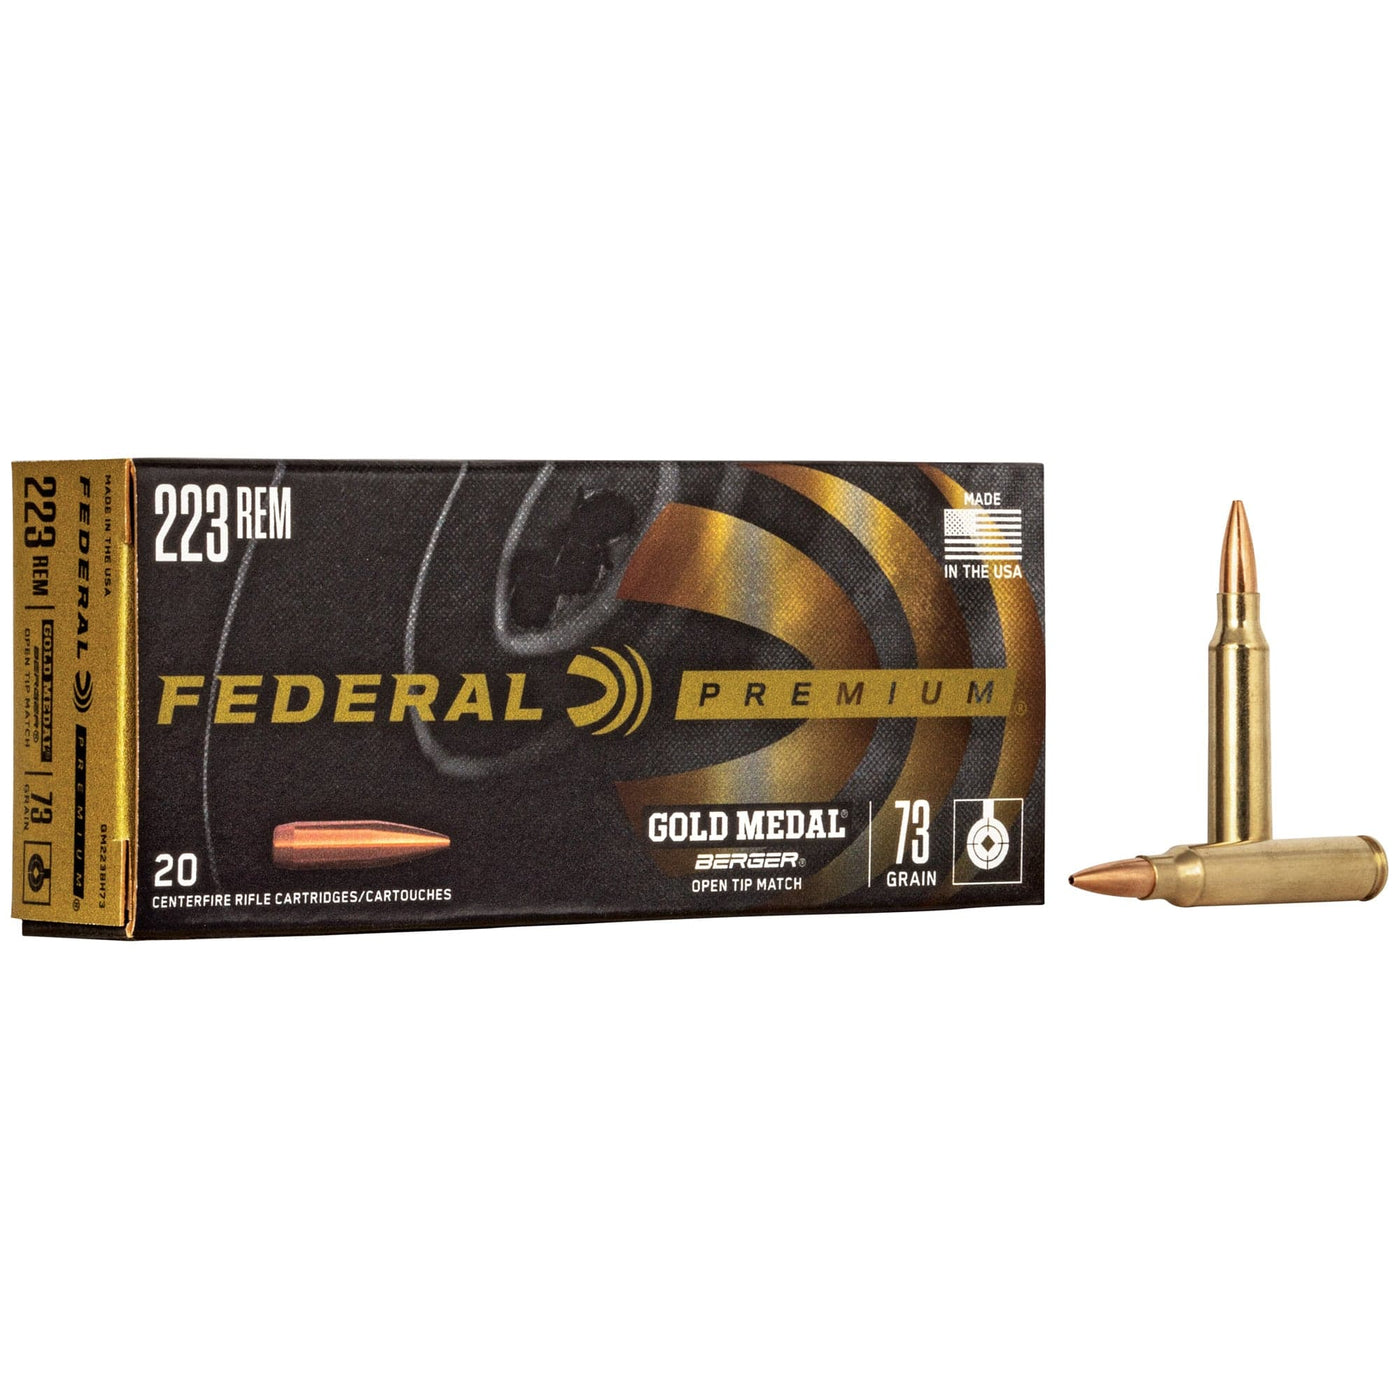 Federal Fed Gold Mdl 223rem 73gr Berger 20 Ammunition